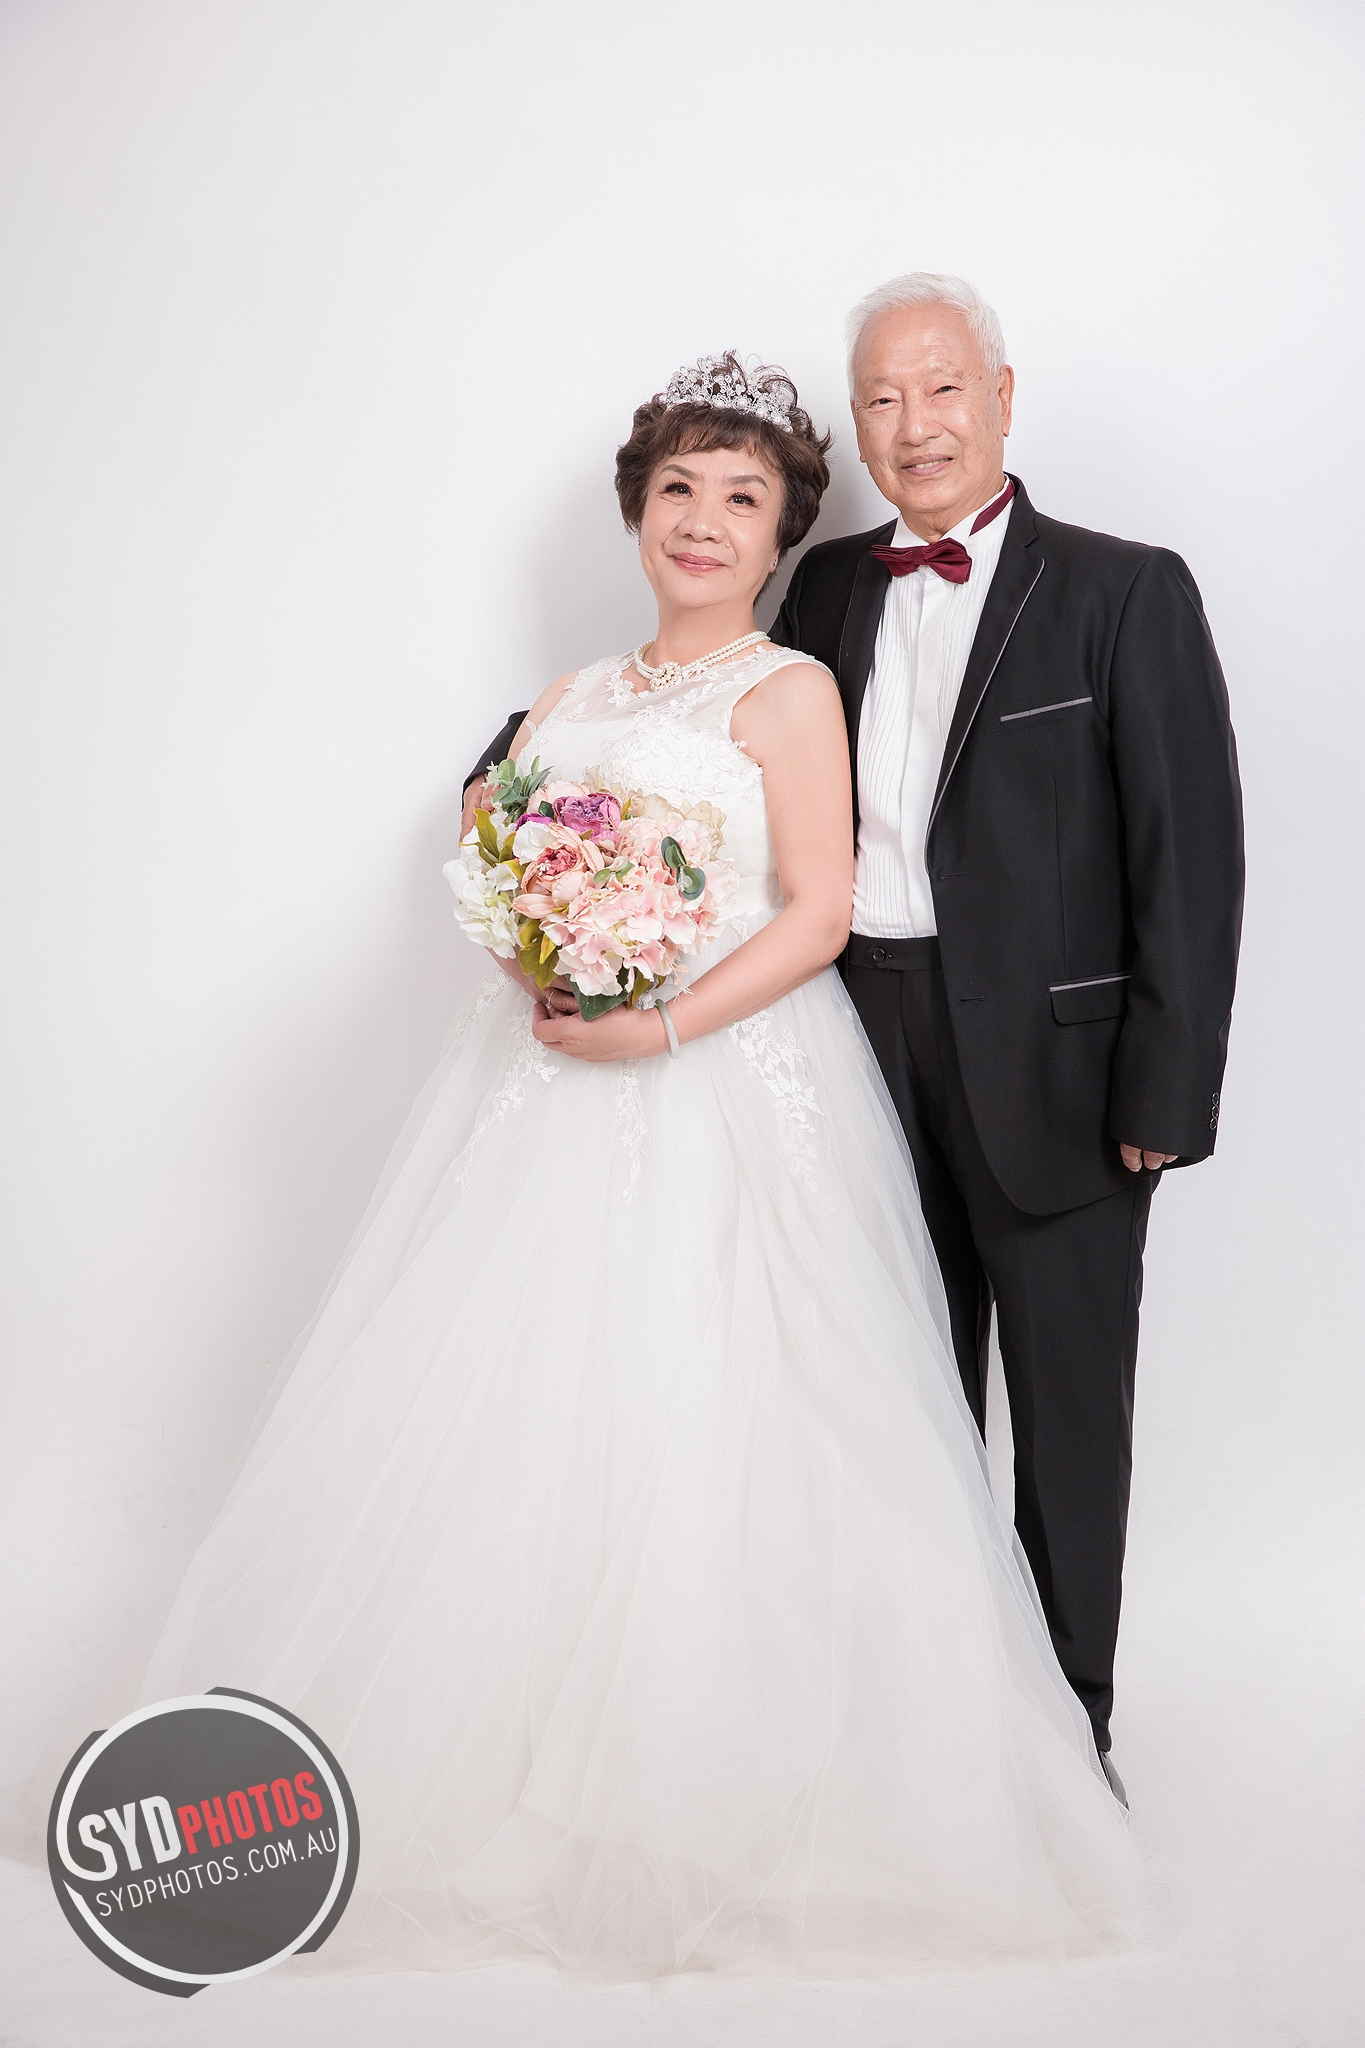 为老年夫妇免费拍摄婚纱照！珠海市妇联开展公益摄影活动